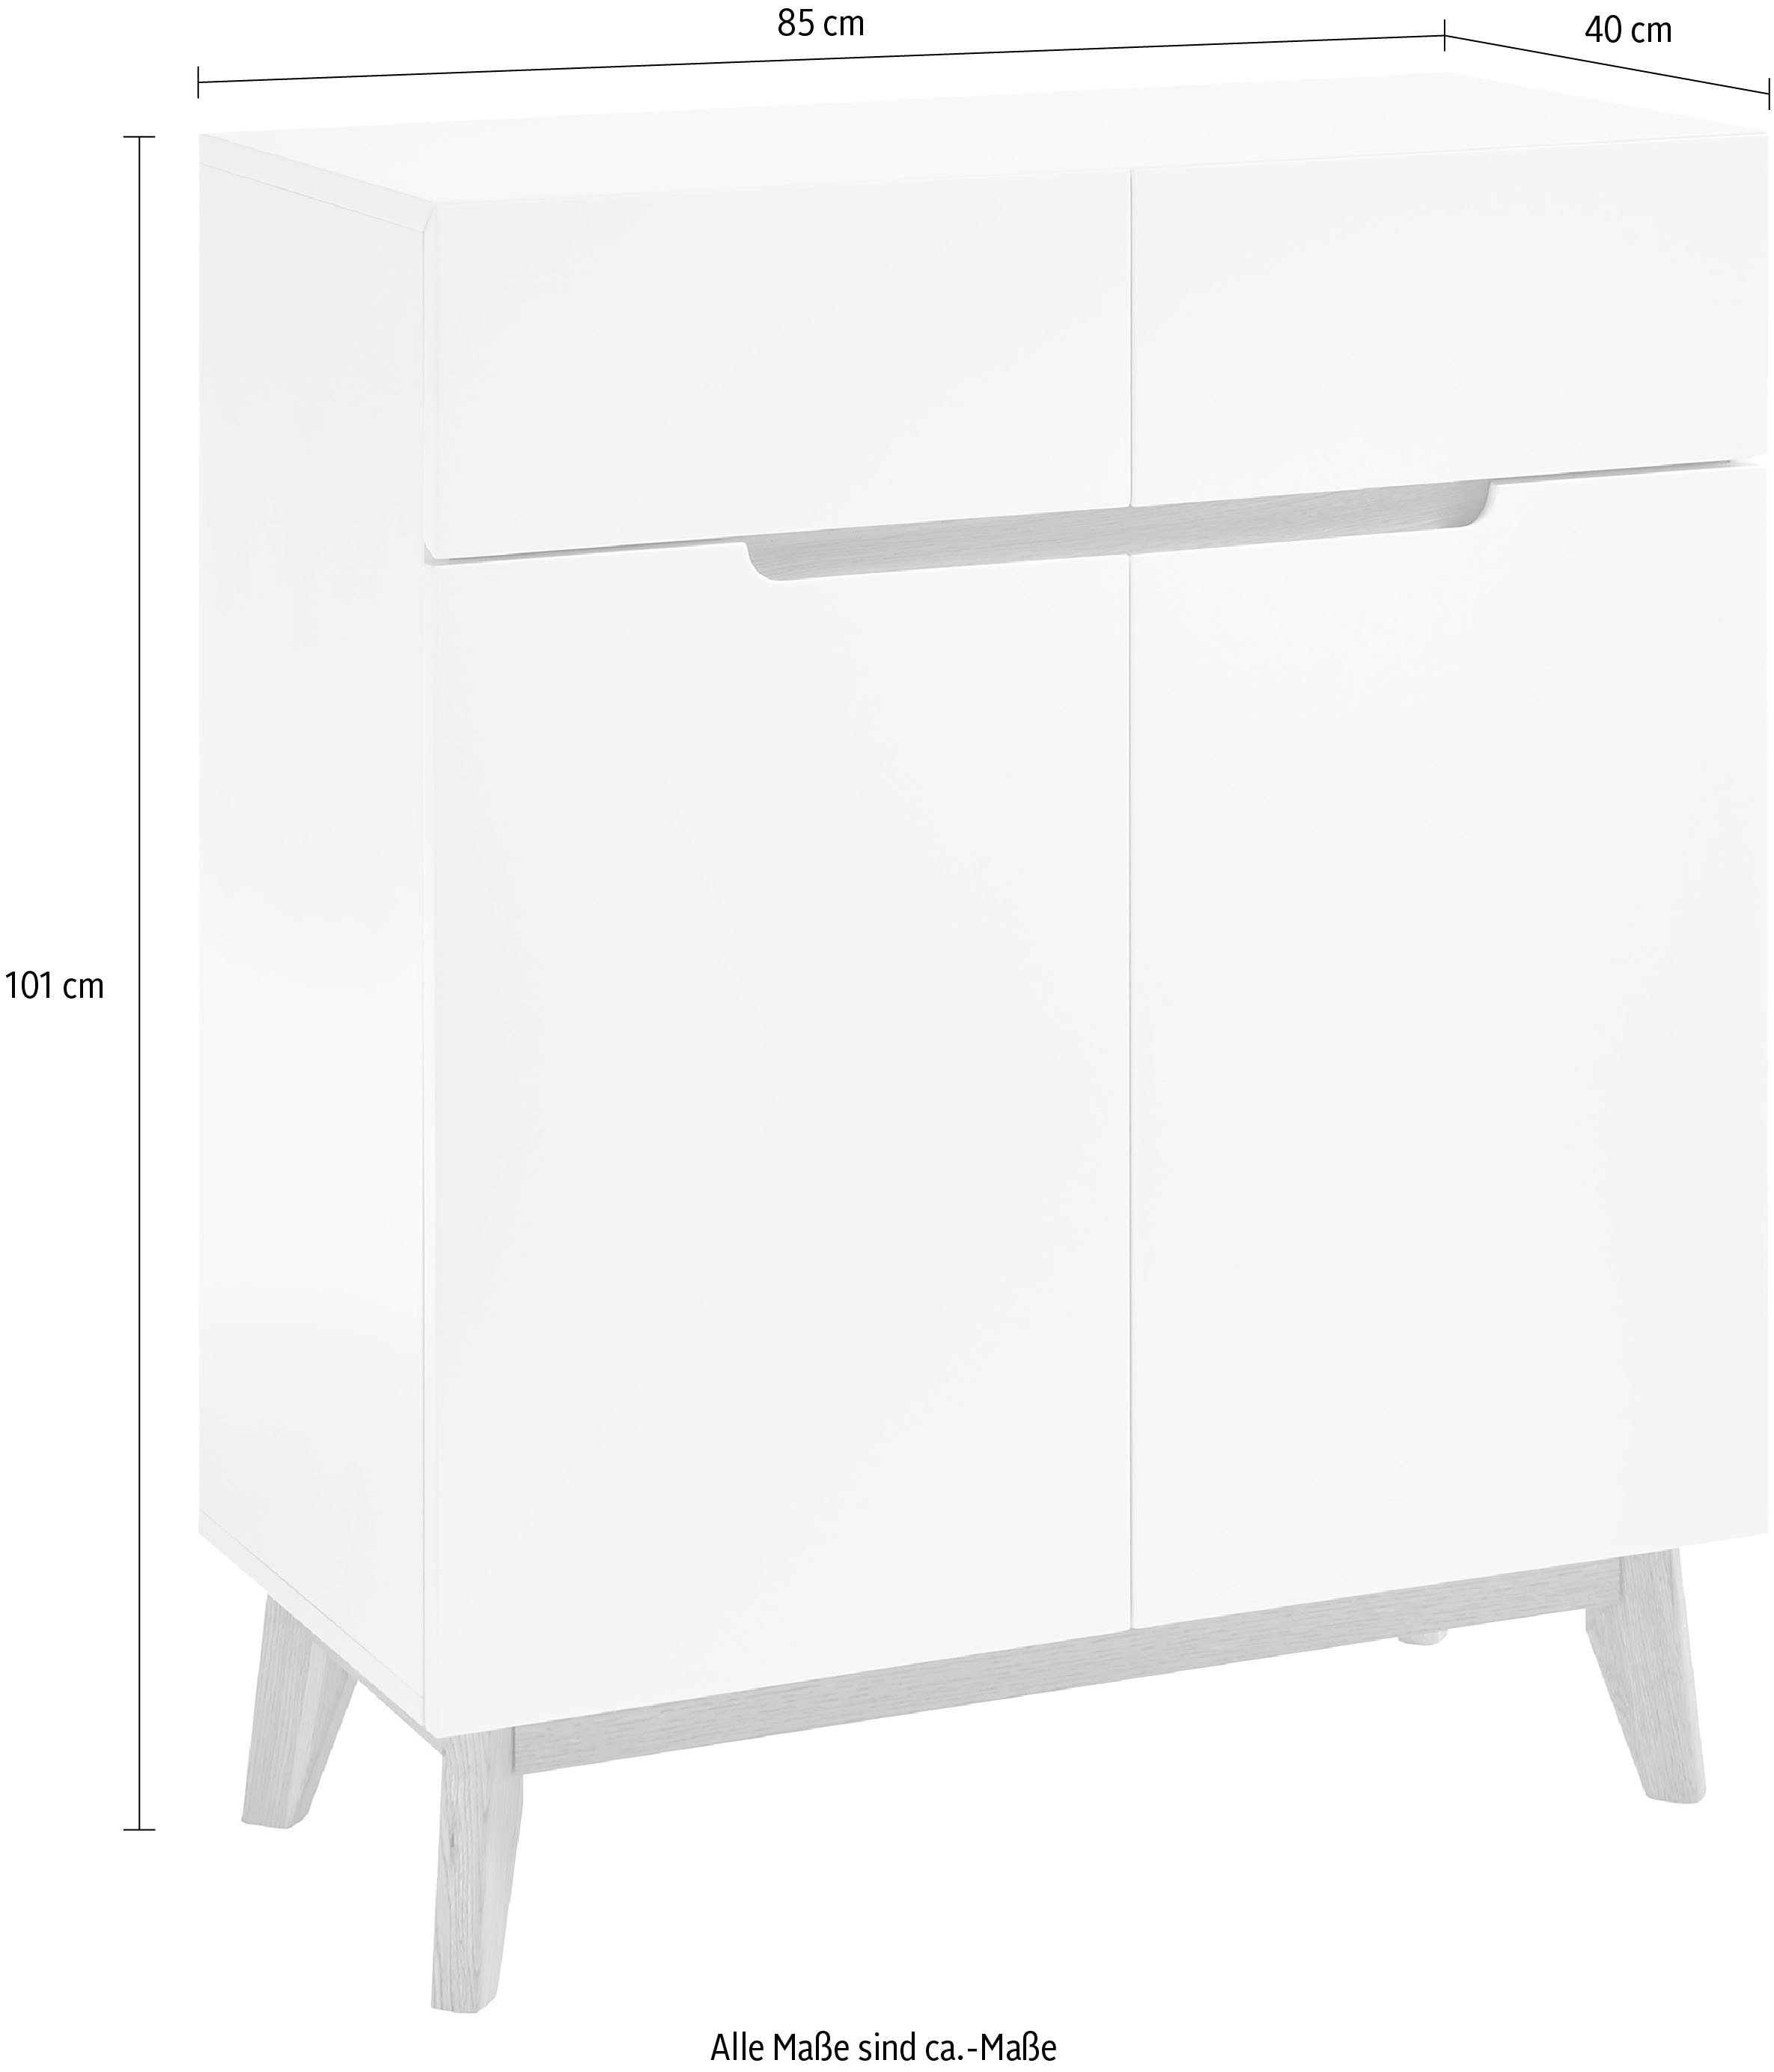 MCA furniture Garderobenschrank »Cervo«, Breite ca. 85 cm günstig kaufen | Garderobenschränke